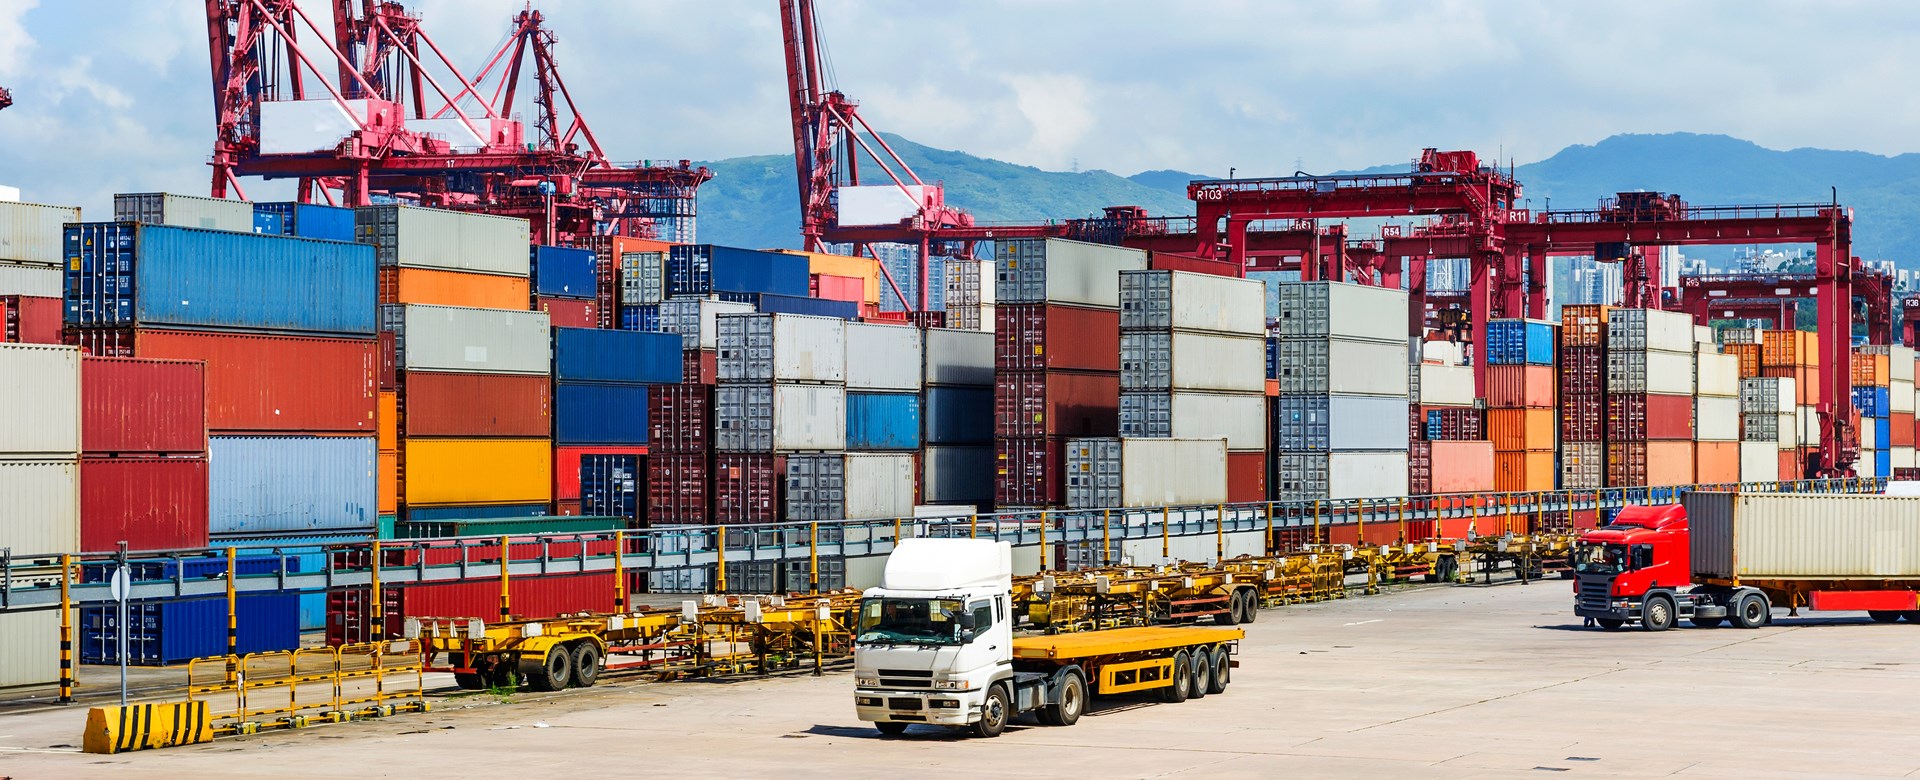 Doanh nghiệp Logistic: Nặng gánh chi phí